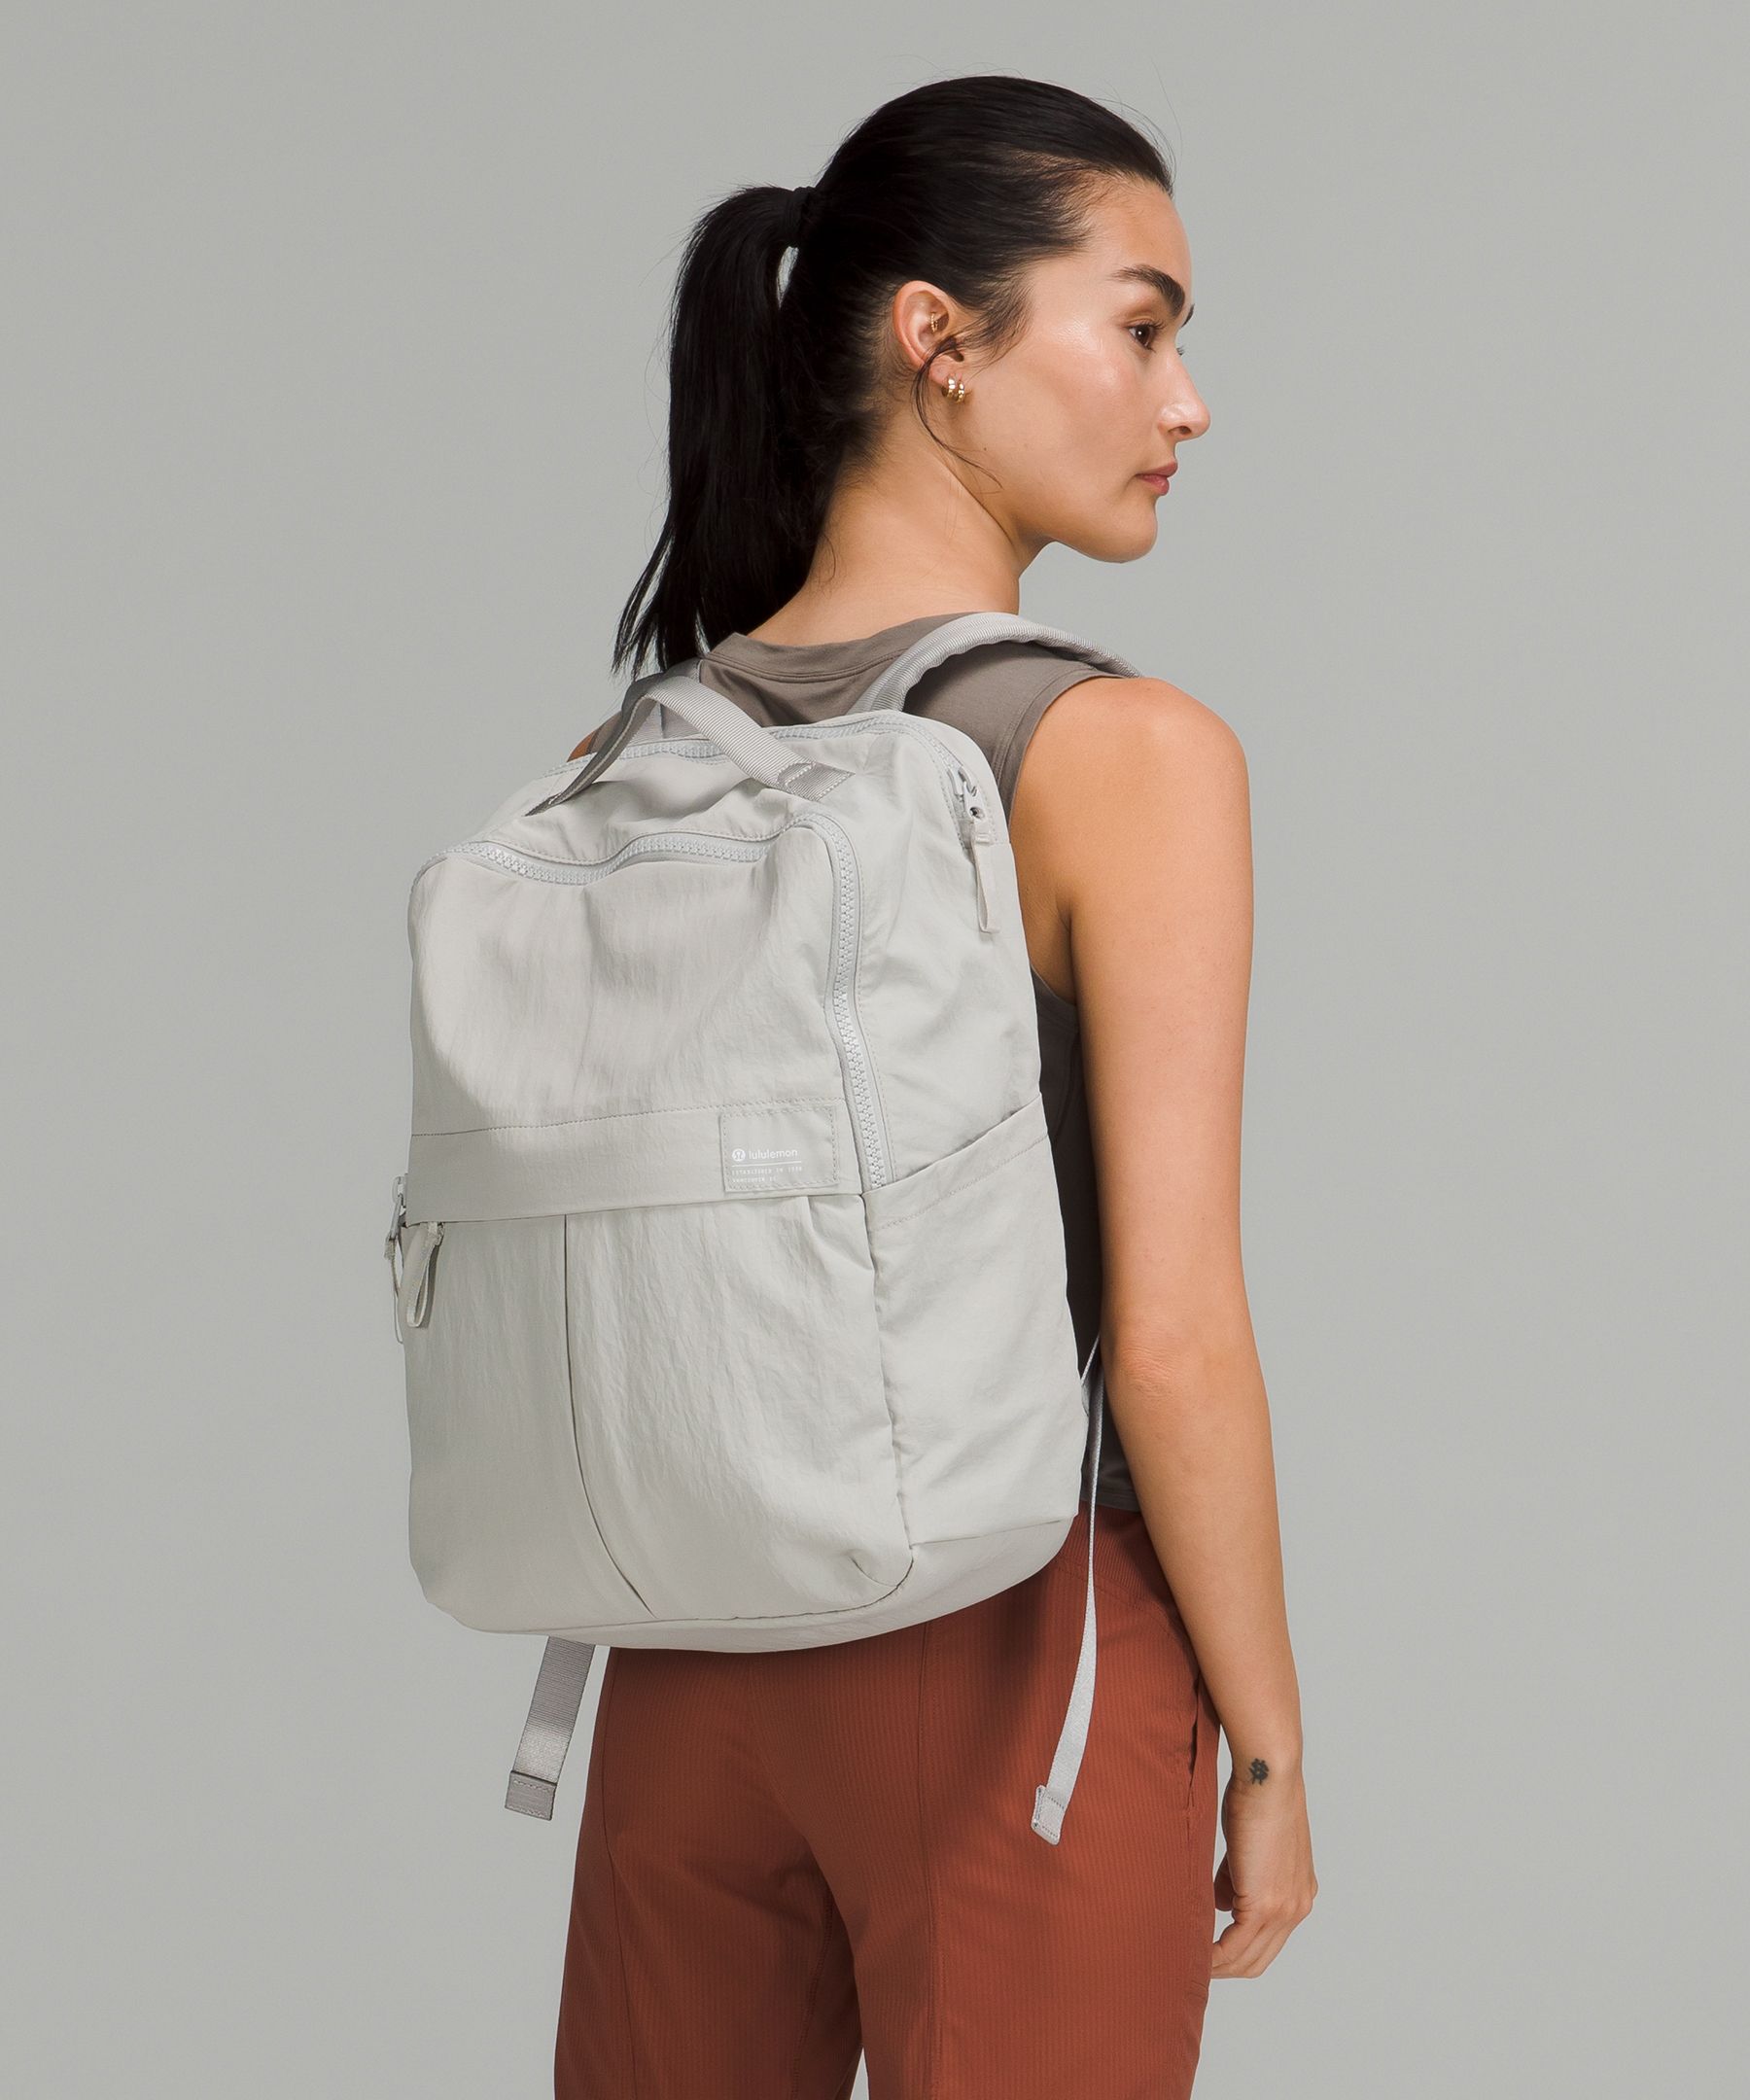 Lululemon: Everyday Backpack 2.0 23L - バッグ